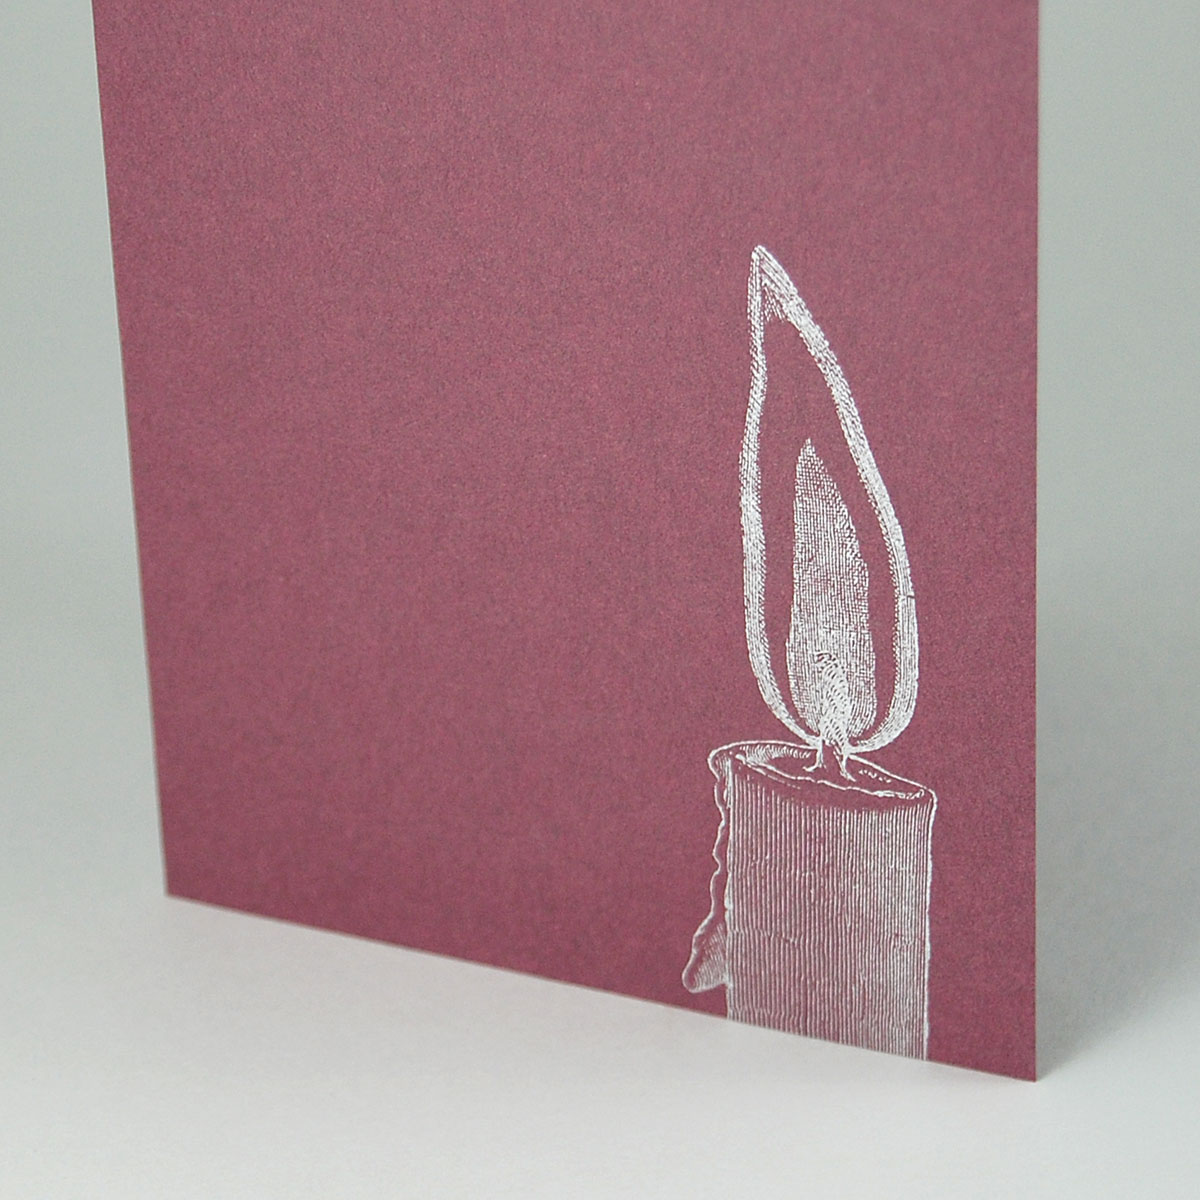 geschmackvolle Trauerkarten mit silberner Kerze, für Beileid, Einladung zur Beerdigung und Urnenbeisetzung...